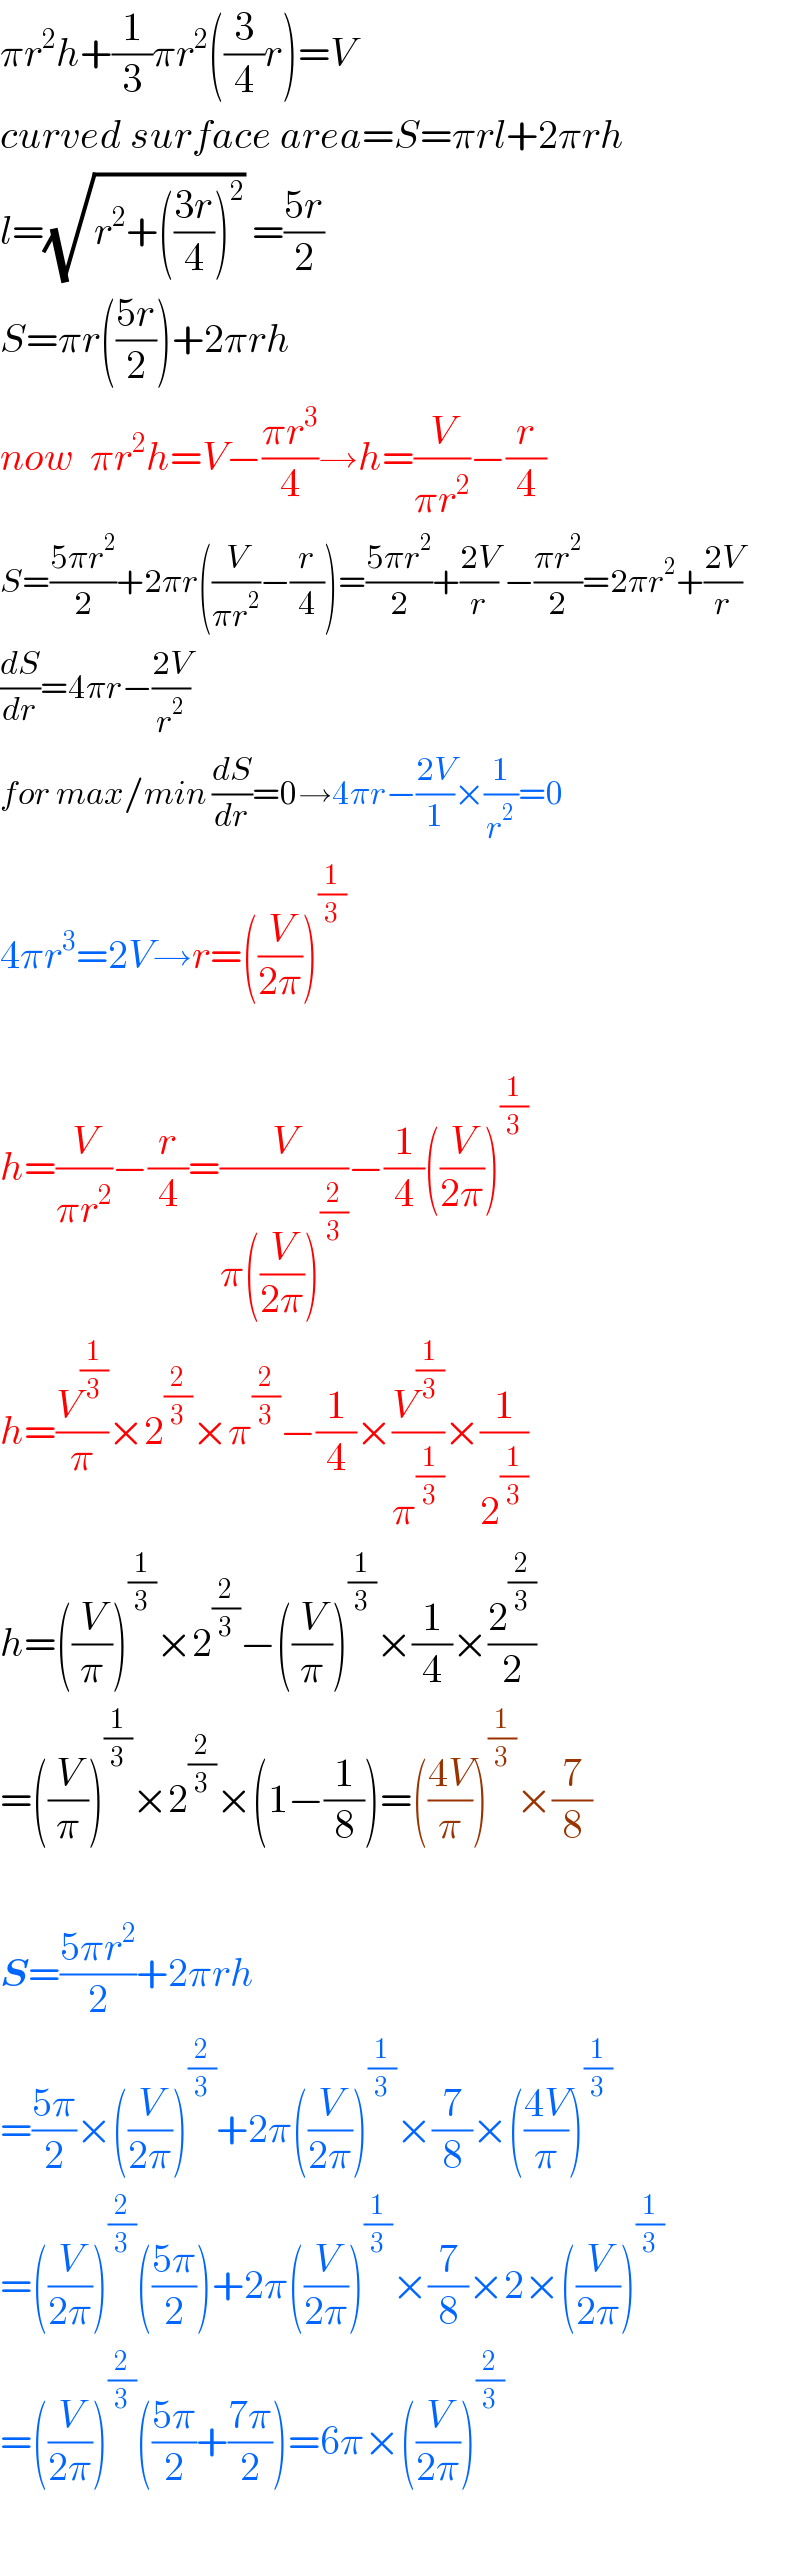 πr^2 h+(1/3)πr^2 ((3/4)r)=V  curved surface area=S=πrl+2πrh  l=(√(r^2 +(((3r)/4))^2 )) =((5r)/2)  S=πr(((5r)/2))+2πrh  now  πr^2 h=V−((πr^3 )/4)→h=(V/(πr^2 ))−(r/4)  S=((5πr^2 )/2)+2πr((V/(πr^2 ))−(r/4))=((5πr^2 )/2)+((2V)/r) −((πr^2 )/2)=2πr^2 +((2V)/r)  (dS/dr)=4πr−((2V)/r^2 )  for max/min (dS/dr)=0→4πr−((2V)/1)×(1/r^2 )=0  4πr^3 =2V→r=((V/(2π)))^(1/3)     h=(V/(πr^2 ))−(r/4)=(V/(π((V/(2π)))^(2/3) ))−(1/4)((V/(2π)))^(1/3)   h=(V^(1/3) /π)×2^(2/3) ×π^(2/3) −(1/4)×(V^(1/3) /π^(1/3) )×(1/2^(1/3) )  h=((V/π))^(1/3) ×2^(2/3) −((V/π))^(1/3) ×(1/4)×(2^(2/3) /2)  =((V/π))^(1/3) ×2^(2/3) ×(1−(1/8))=(((4V)/π))^(1/3) ×(7/8)    S=((5πr^2 )/2)+2πrh  =((5π)/2)×((V/(2π)))^(2/3) +2π((V/(2π)))^(1/3) ×(7/8)×(((4V)/π))^(1/3)   =((V/(2π)))^(2/3) (((5π)/2))+2π((V/(2π)))^(1/3) ×(7/8)×2×((V/(2π)))^(1/3)   =((V/(2π)))^(2/3) (((5π)/2)+((7π)/2))=6π×((V/(2π)))^(2/3)     